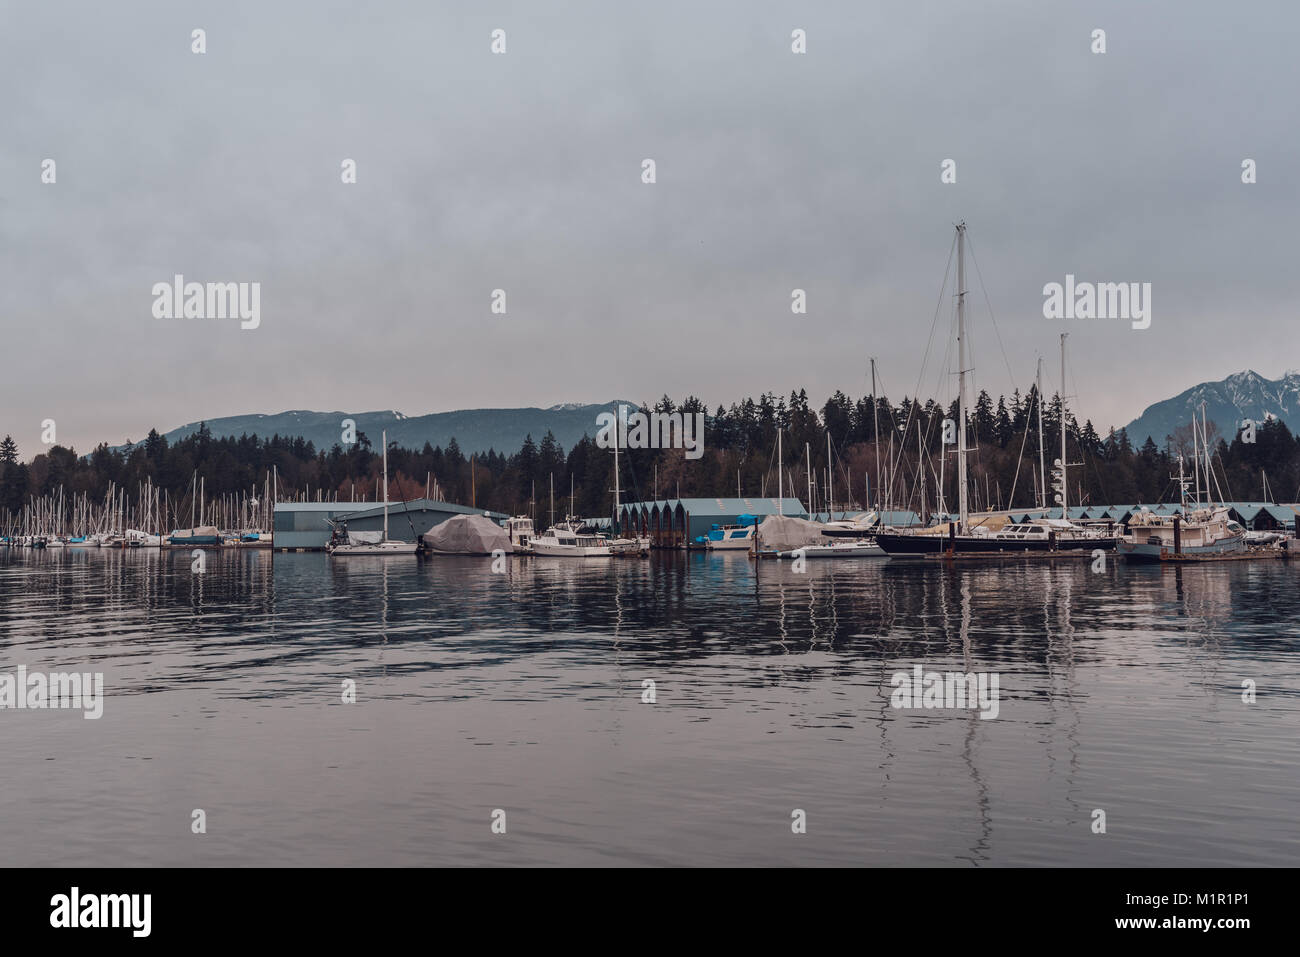 Vancouver, British Columbia, Canada - 24 dicembre 2017: lungomare nel centro cittadino con le barche che riflette nell'acqua. Foto Stock